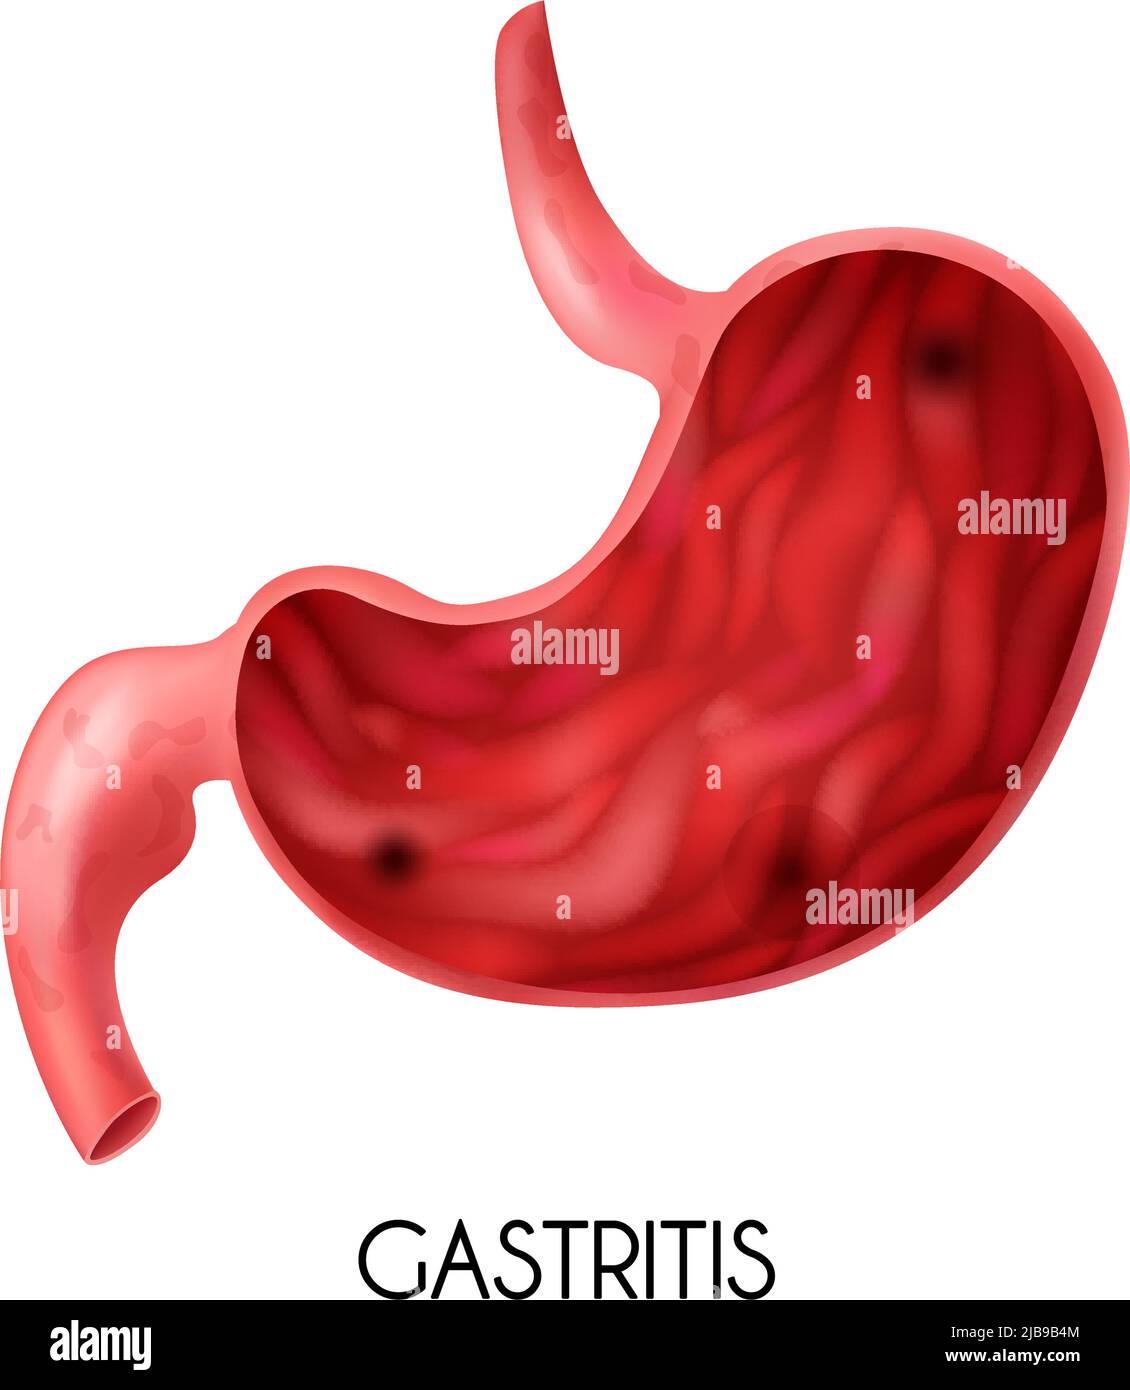 Realistisches medizinisches Bild des menschlichen Magens mit Gastritis auf weißem Hintergrund Vektorgrafik Stock Vektor